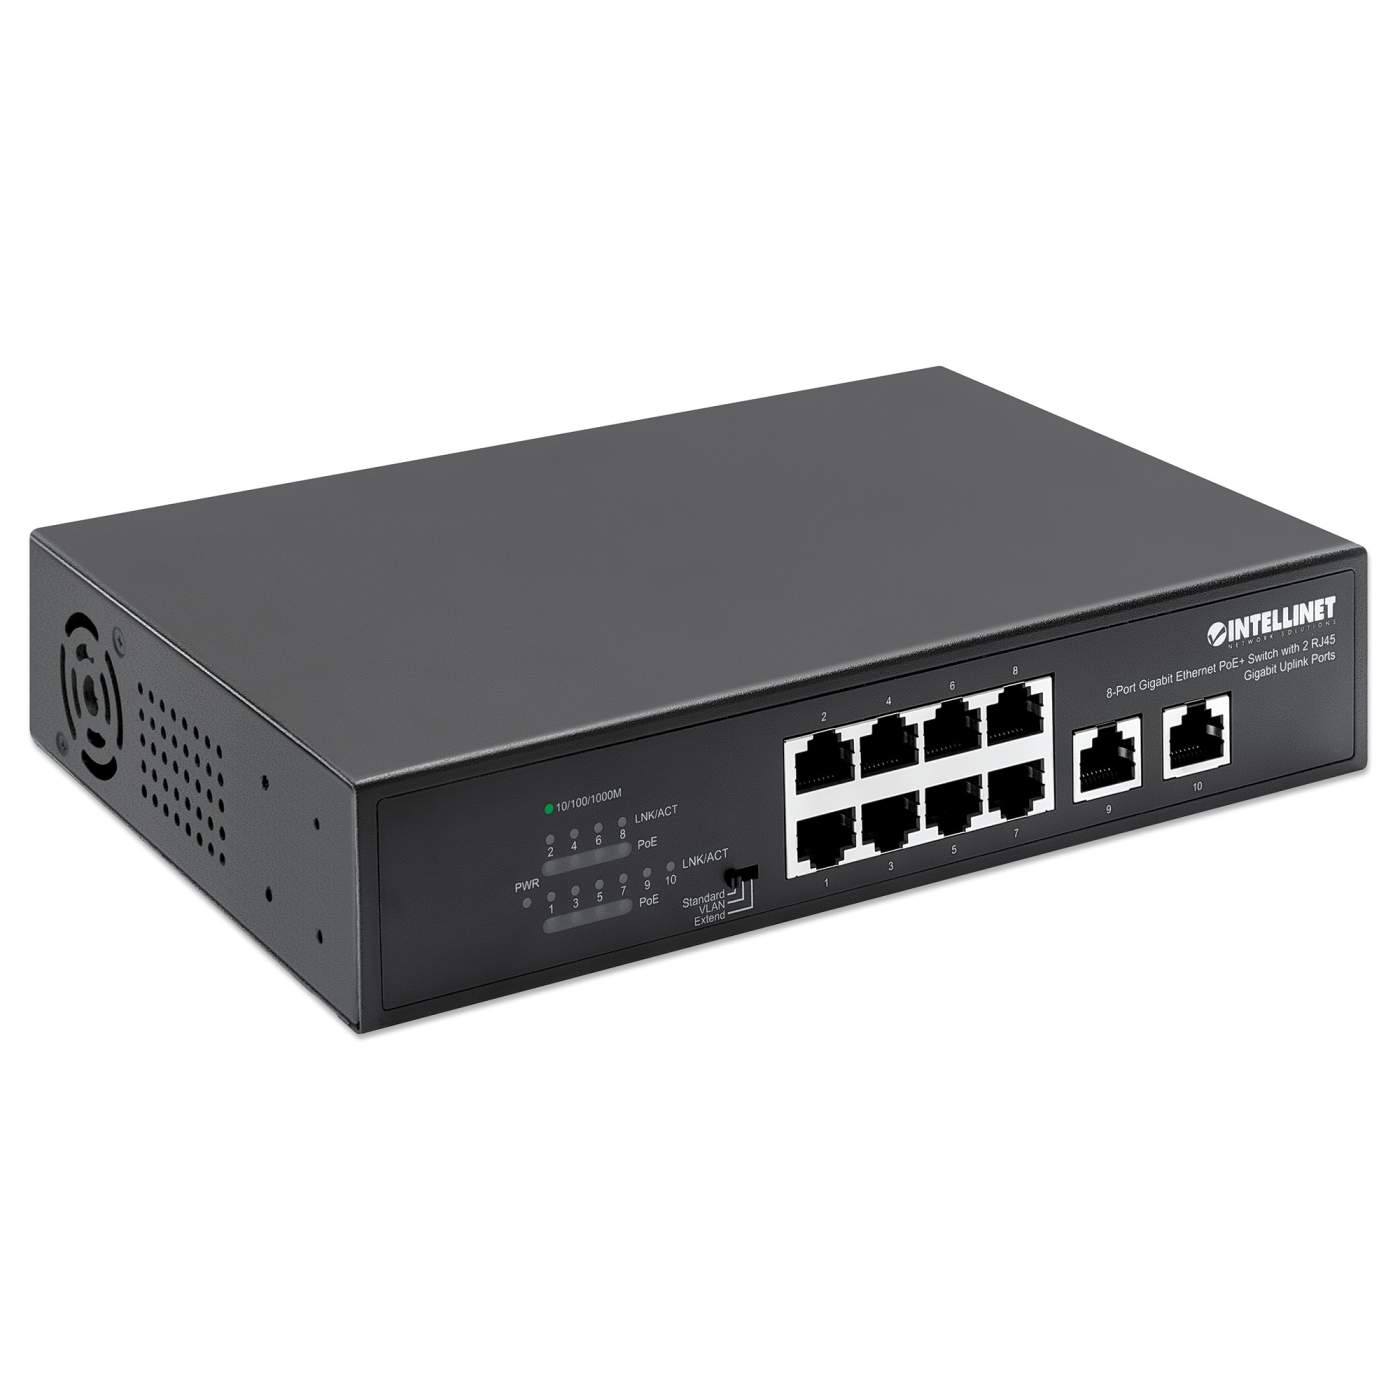 8-Port Gigabit Ethernet PoE+ Switch with 2 RJ45 Gigabit Uplink Ports